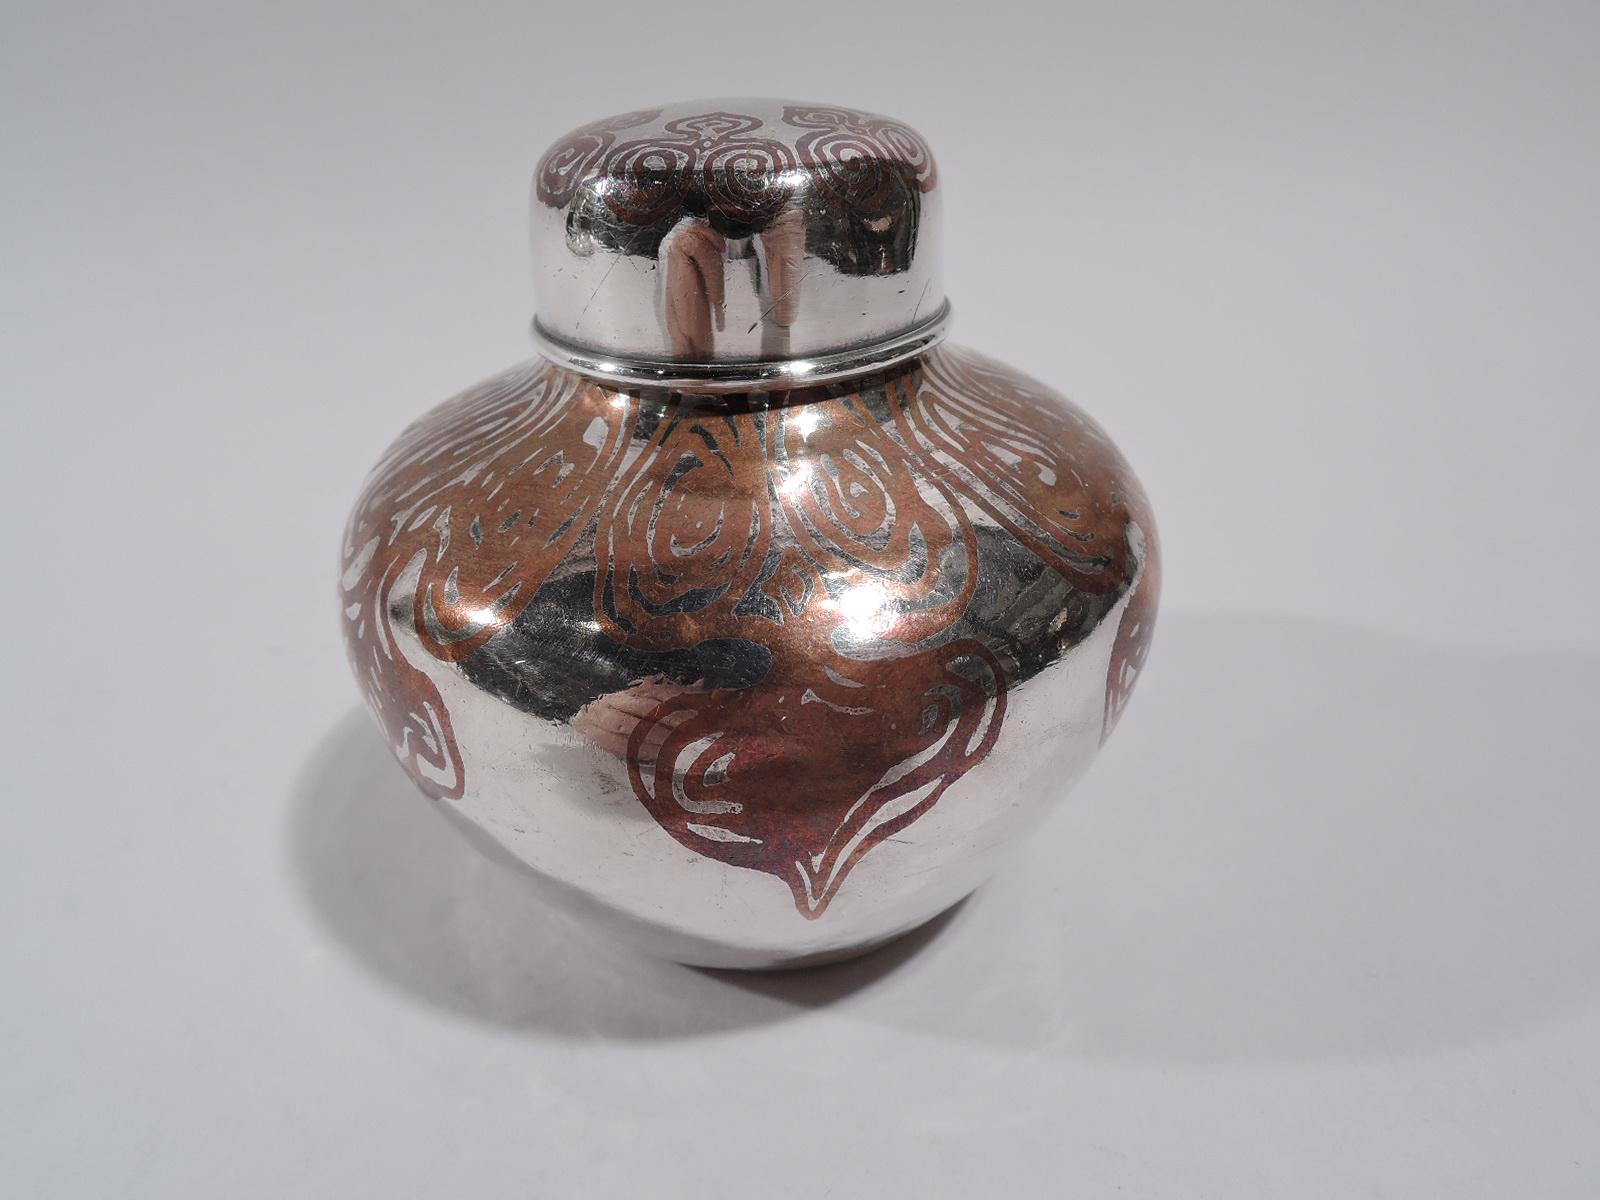 Exotische Teedose aus gemischtem Metall. Hergestellt von Tiffany & Co. in New York, um 1910. Ingwerdose aus Sterlingsilber mit gedrungenen, spitz zulaufenden Seiten, kurzem Hals und eng anliegendem Deckel. Kupferornament mit unregelmäßigem